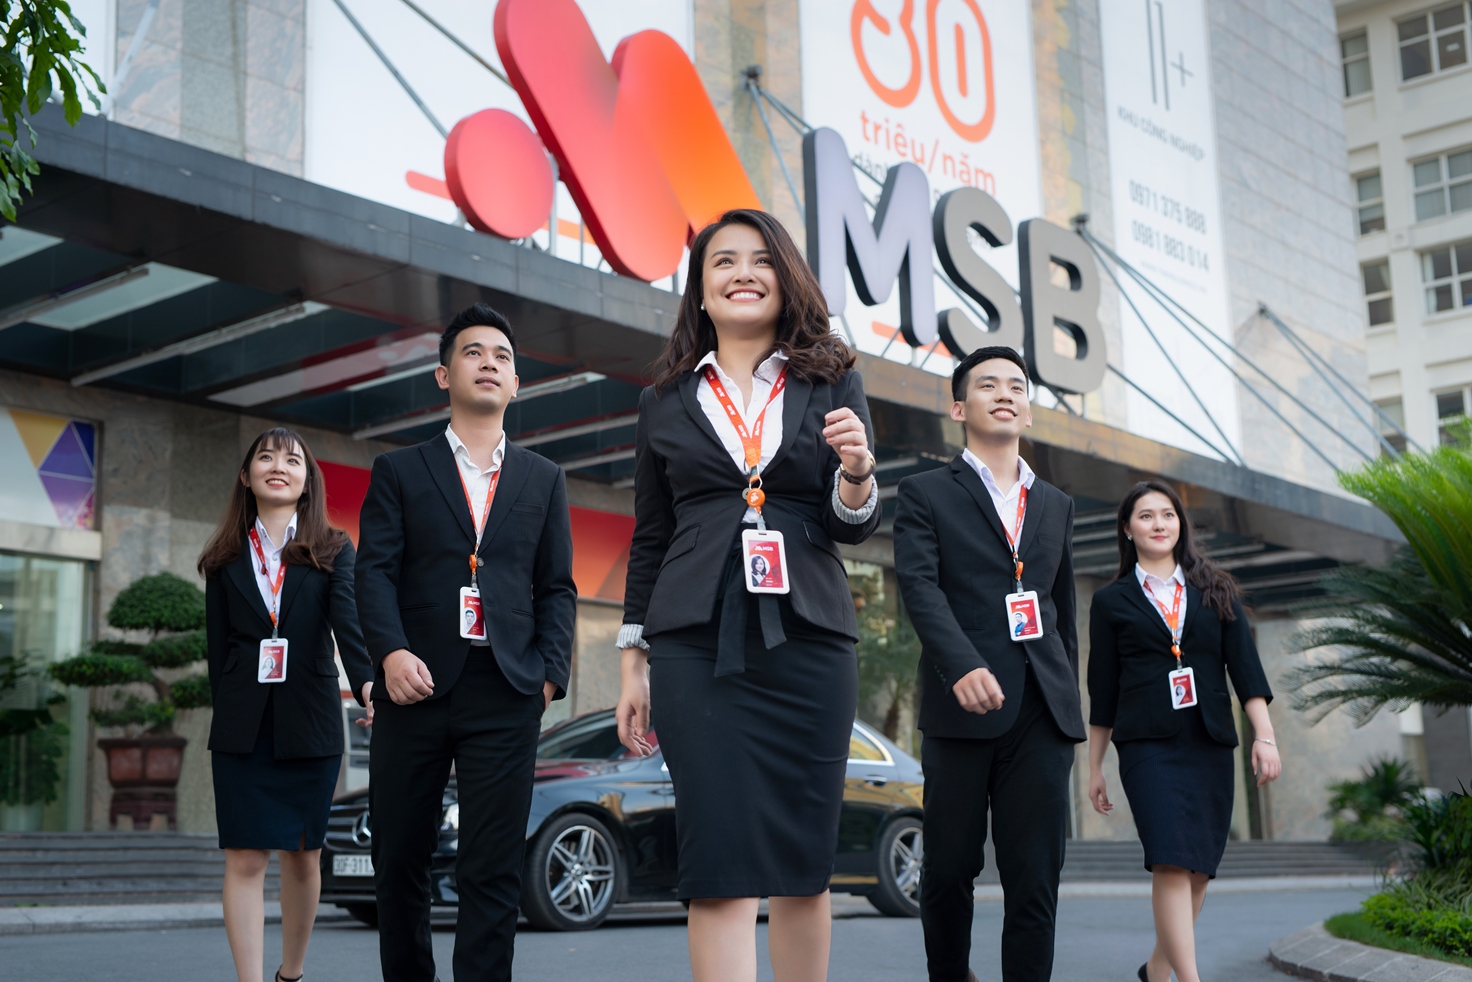 MSB vào Top các thương hiệu tài chính dẫn đầu của Forbes - Ảnh 1.